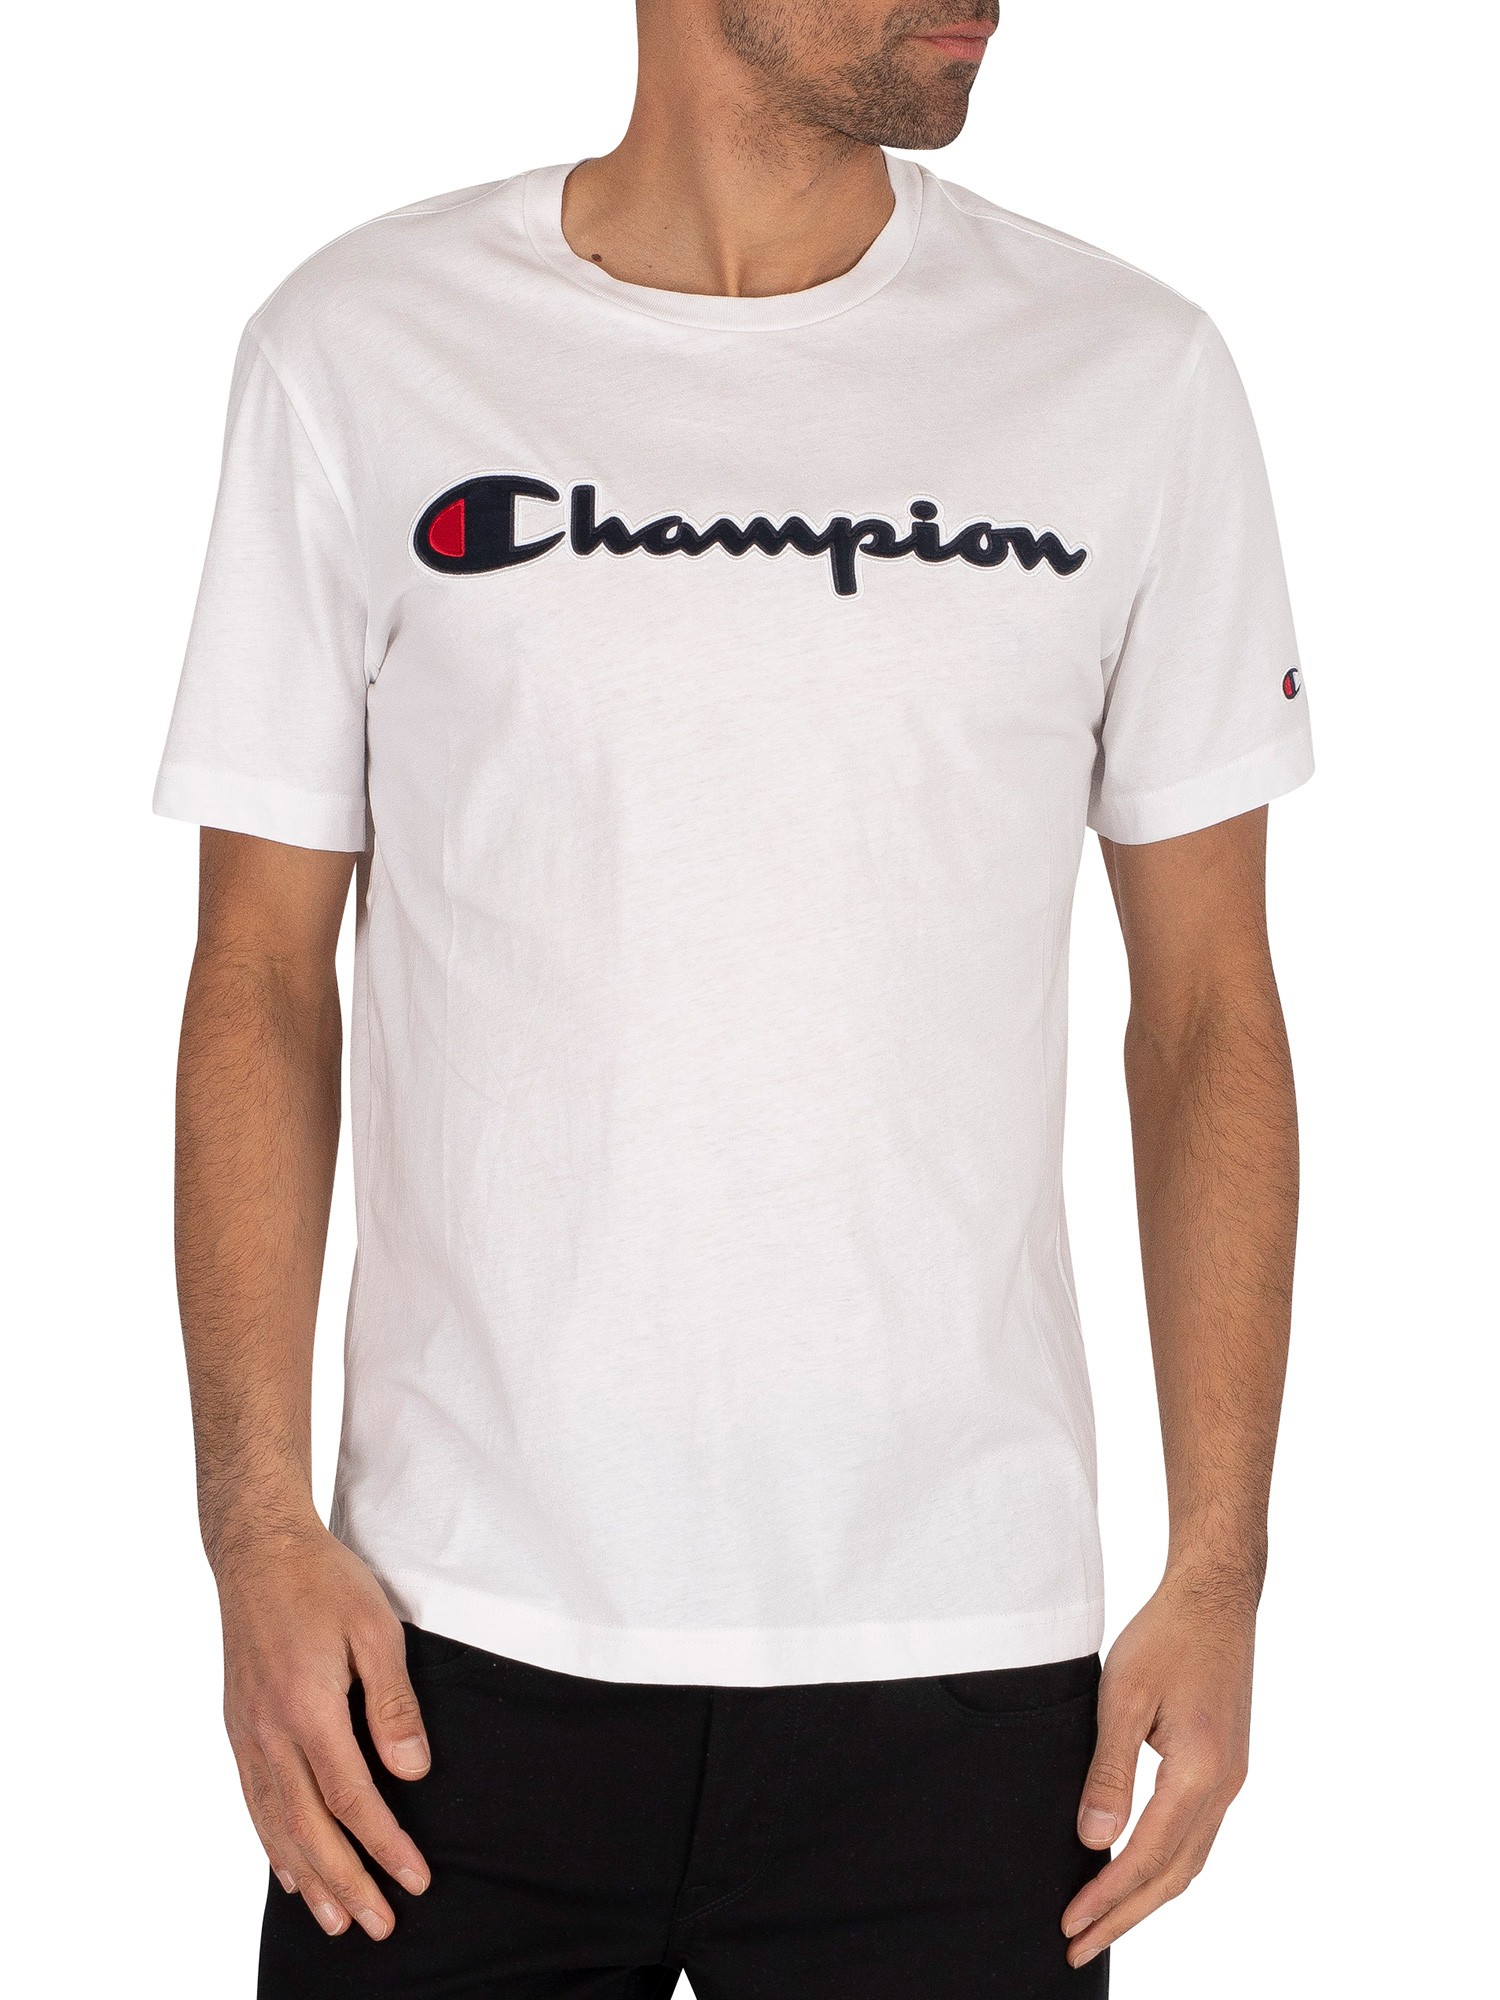 Champion Men's Graphic T-Shirt, White 